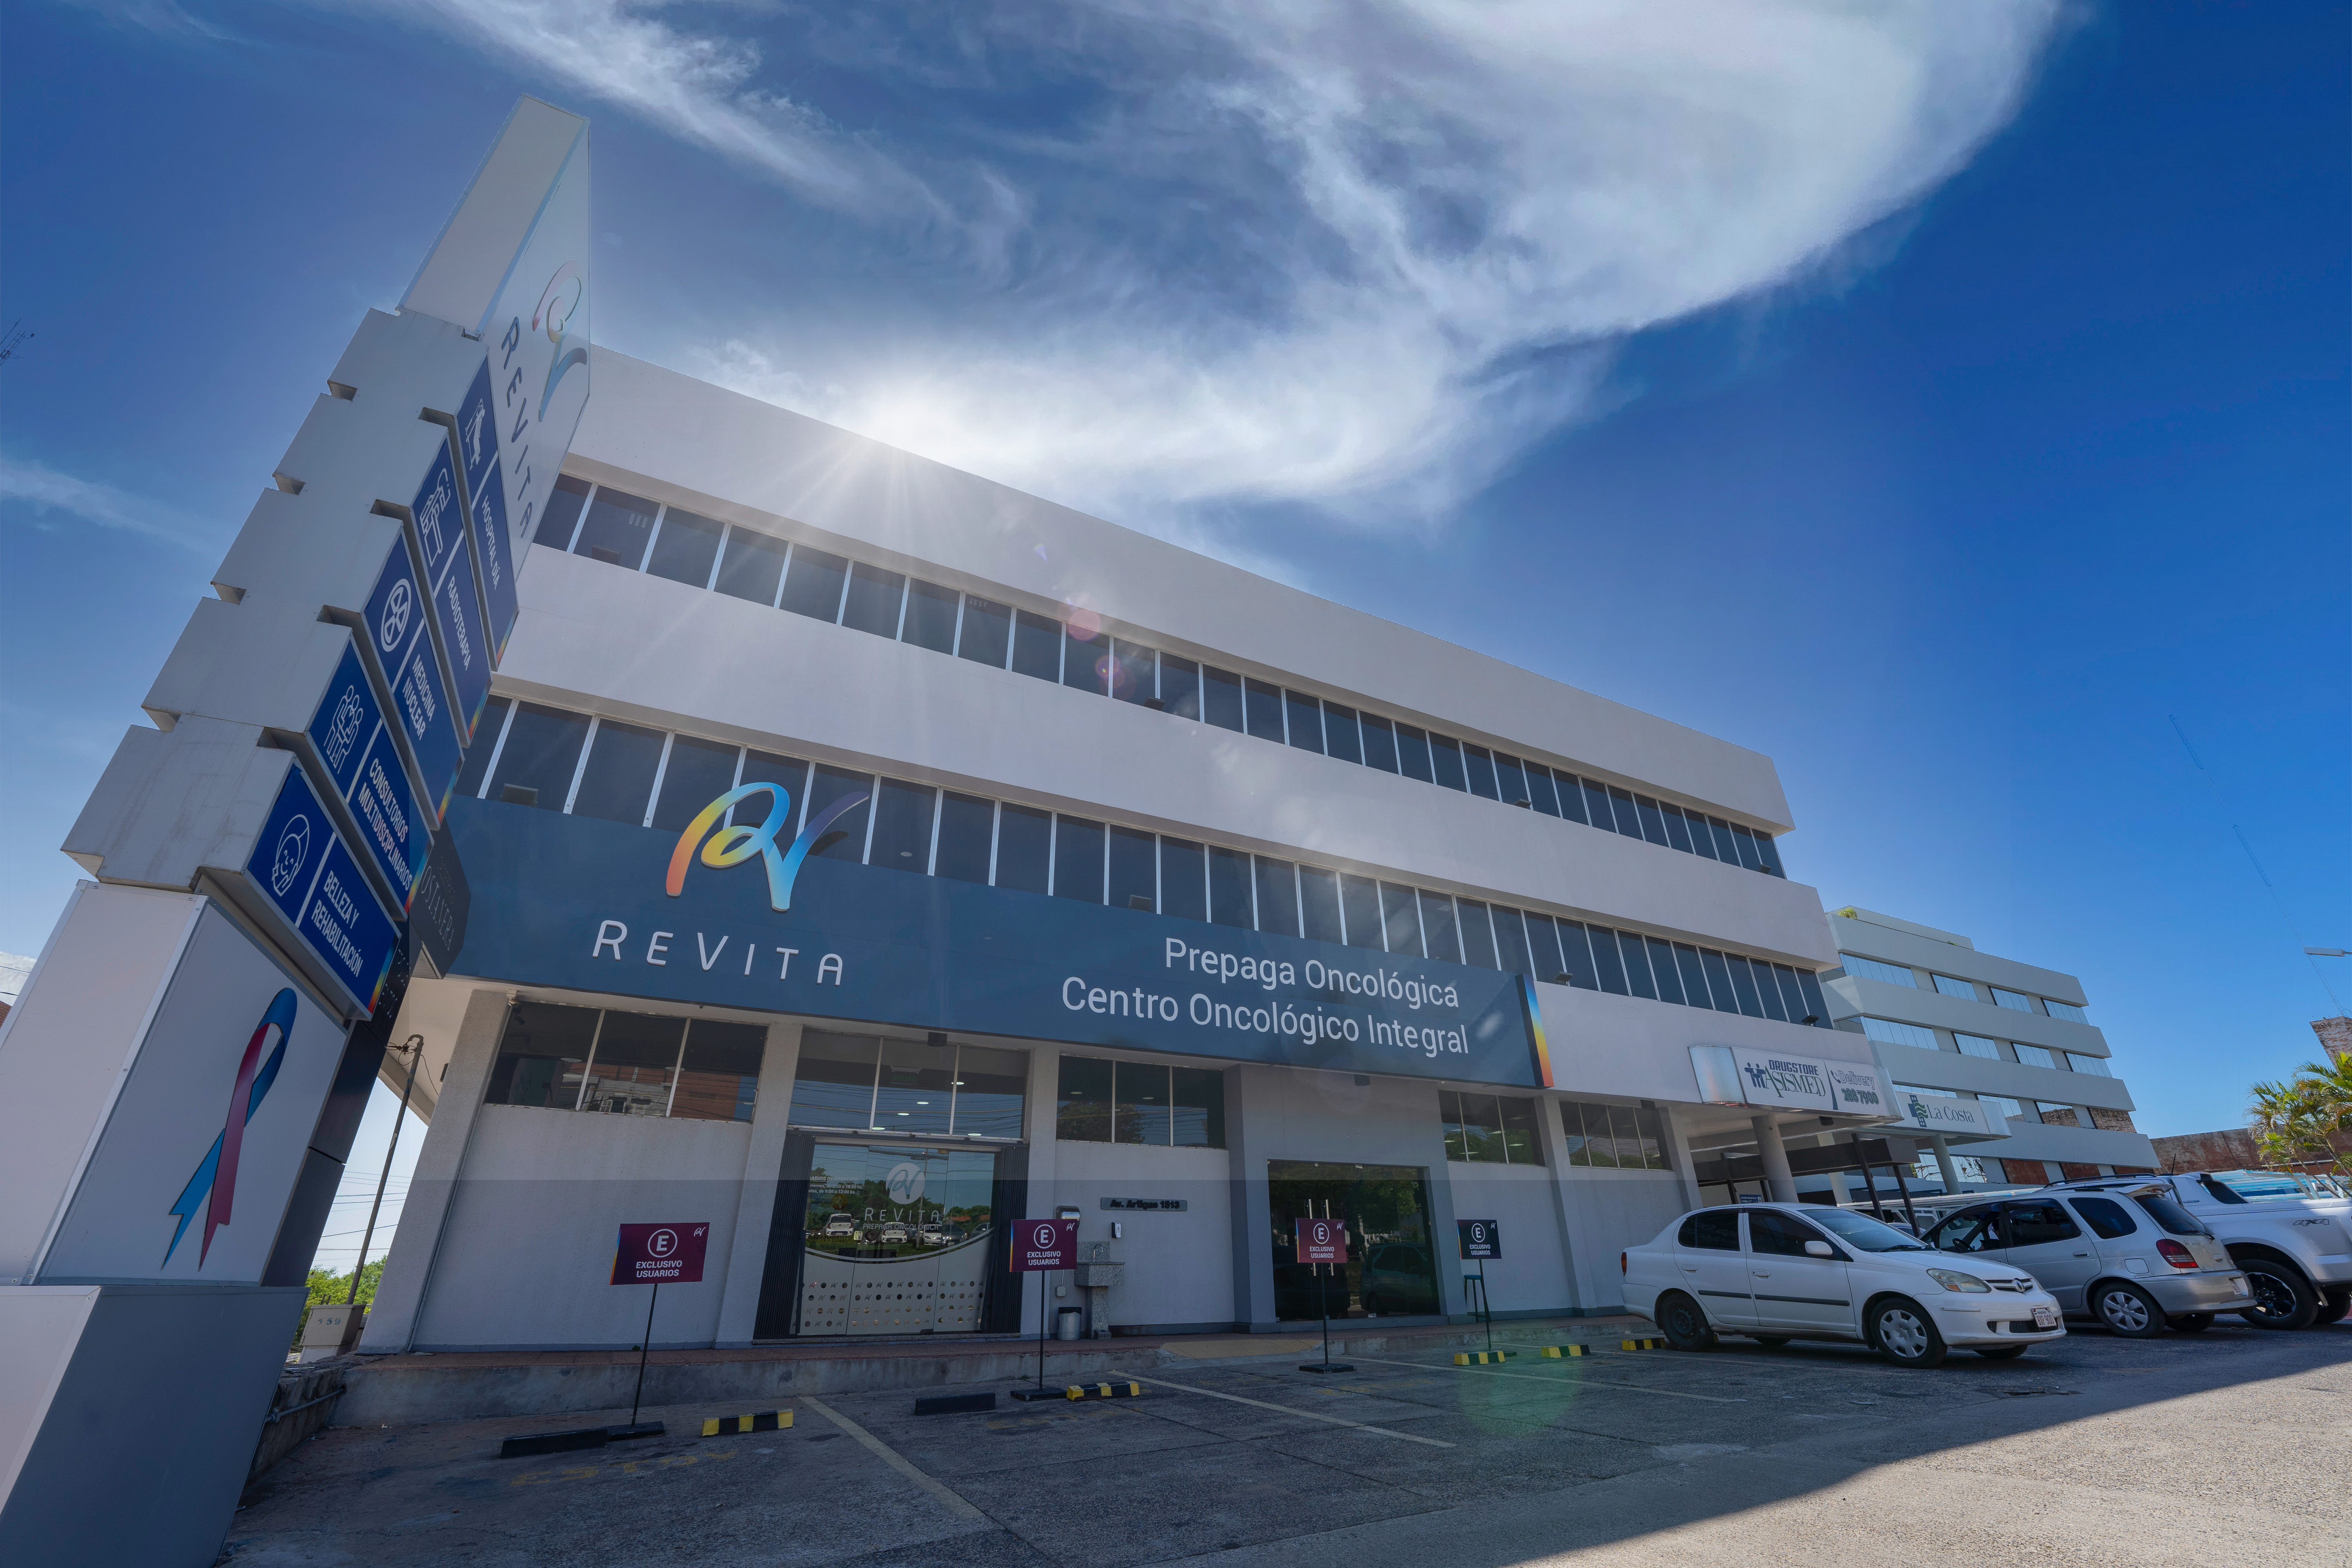 Revita, el primer centro oncológico integral privado del país, está en funcionamiento desde el 2016. Foto: Revita Centro Oncológico.